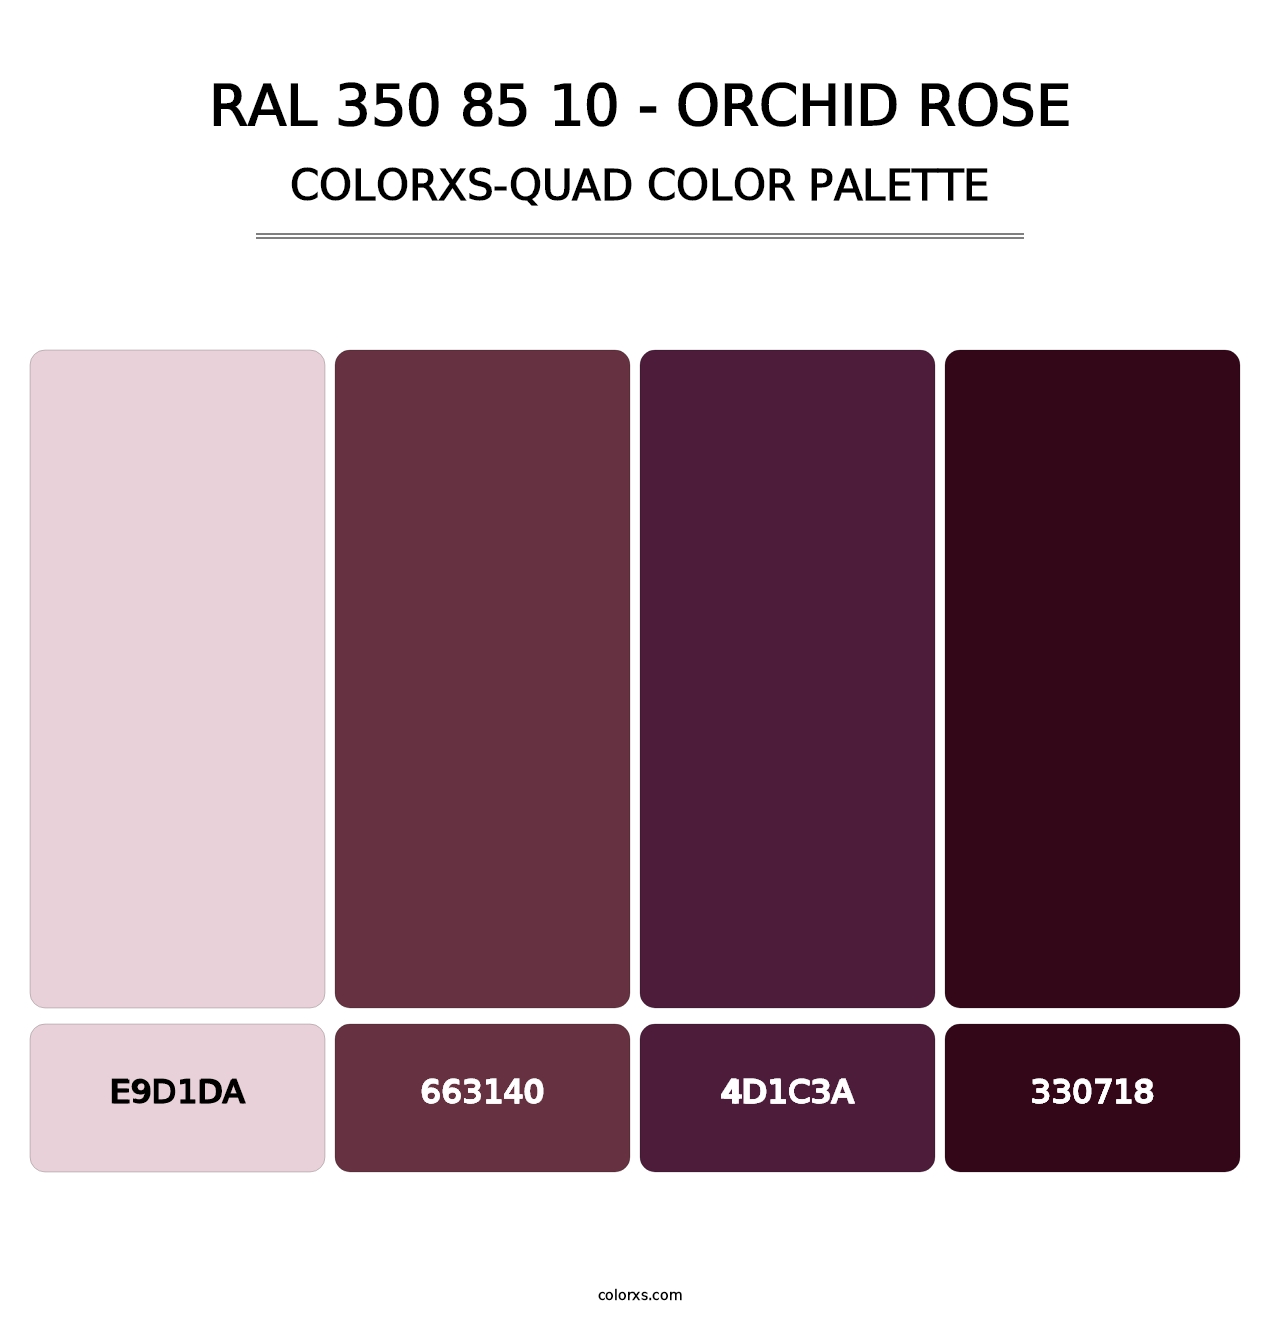 RAL 350 85 10 - Orchid Rose - Colorxs Quad Palette